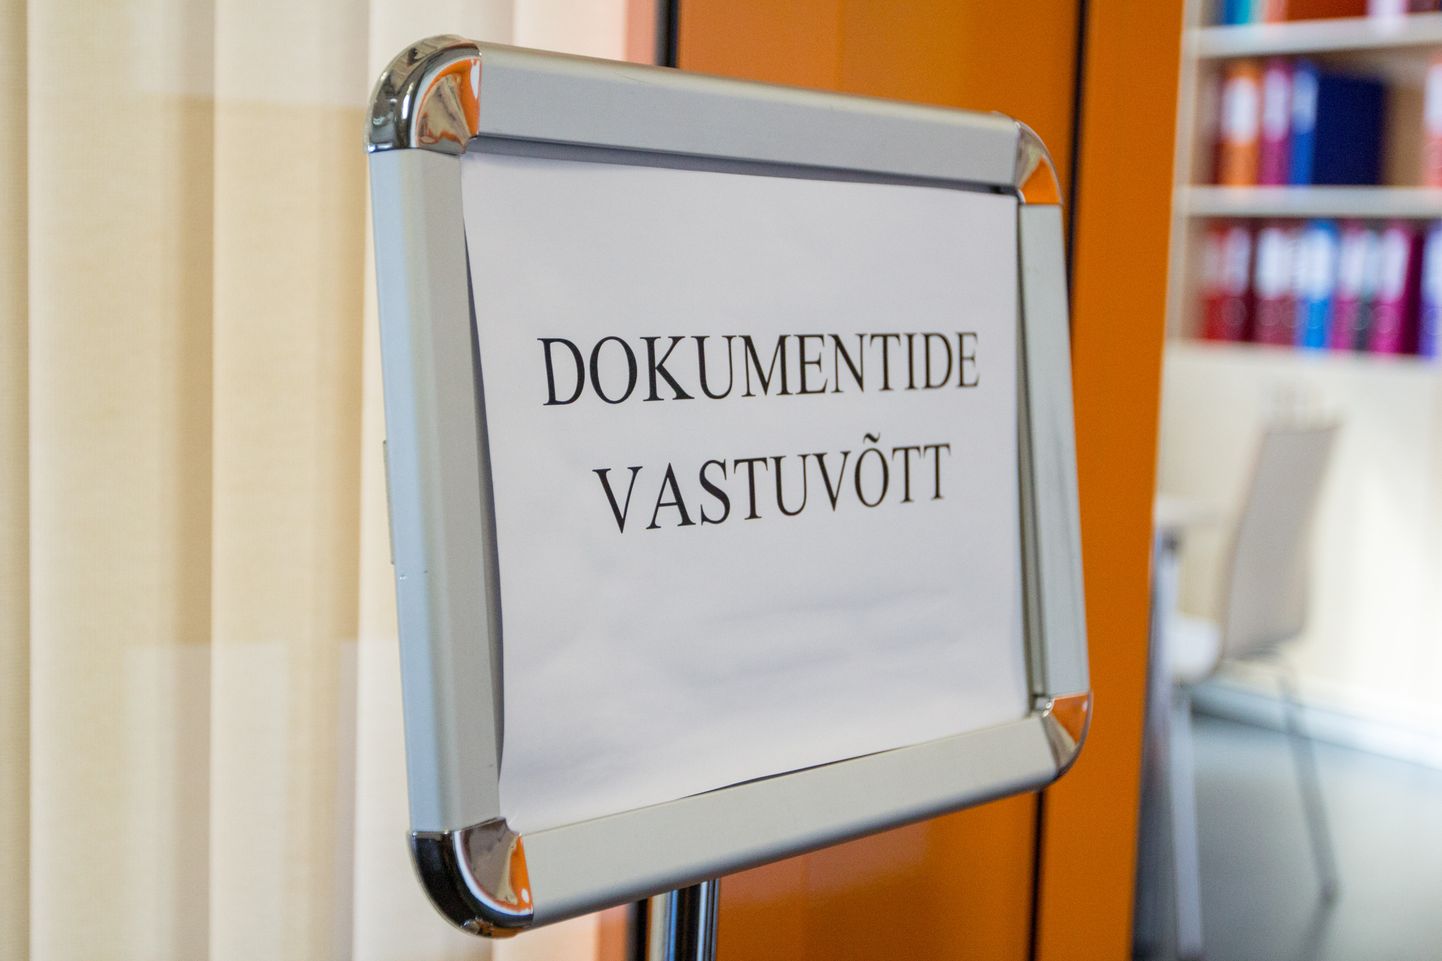 Valgamaa Kutseõppekeskus. Dokumentide vastuvõtt.


Foto: Arvo Meeks/Valgamaalane